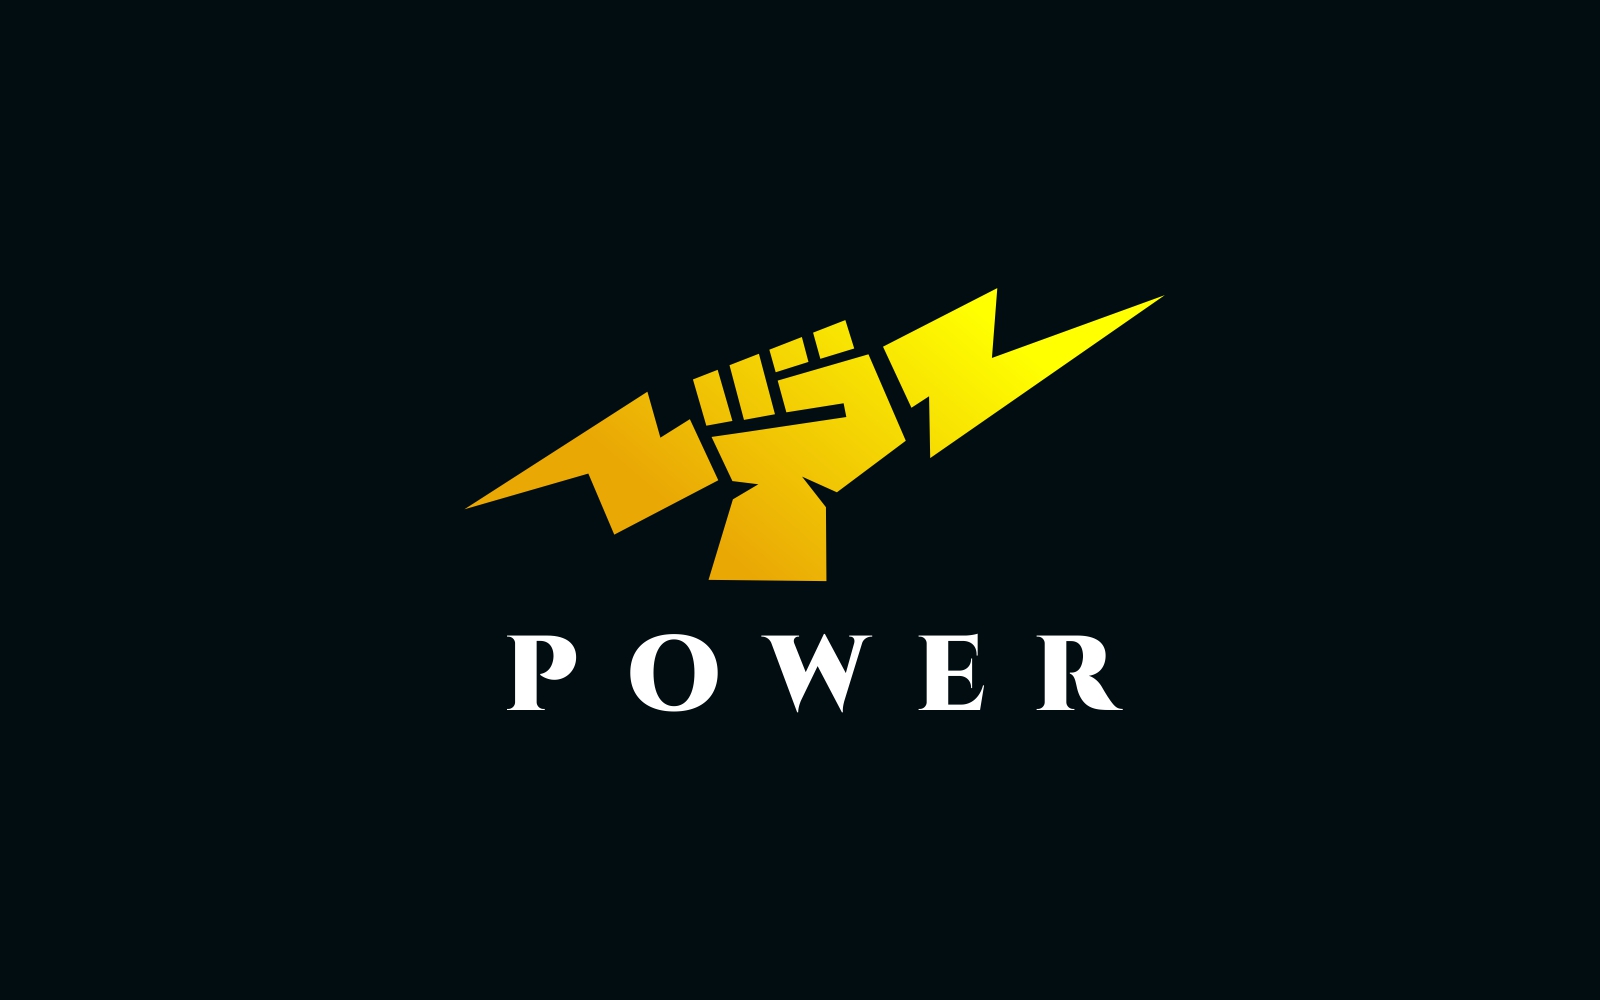 Power Hand Logo Template